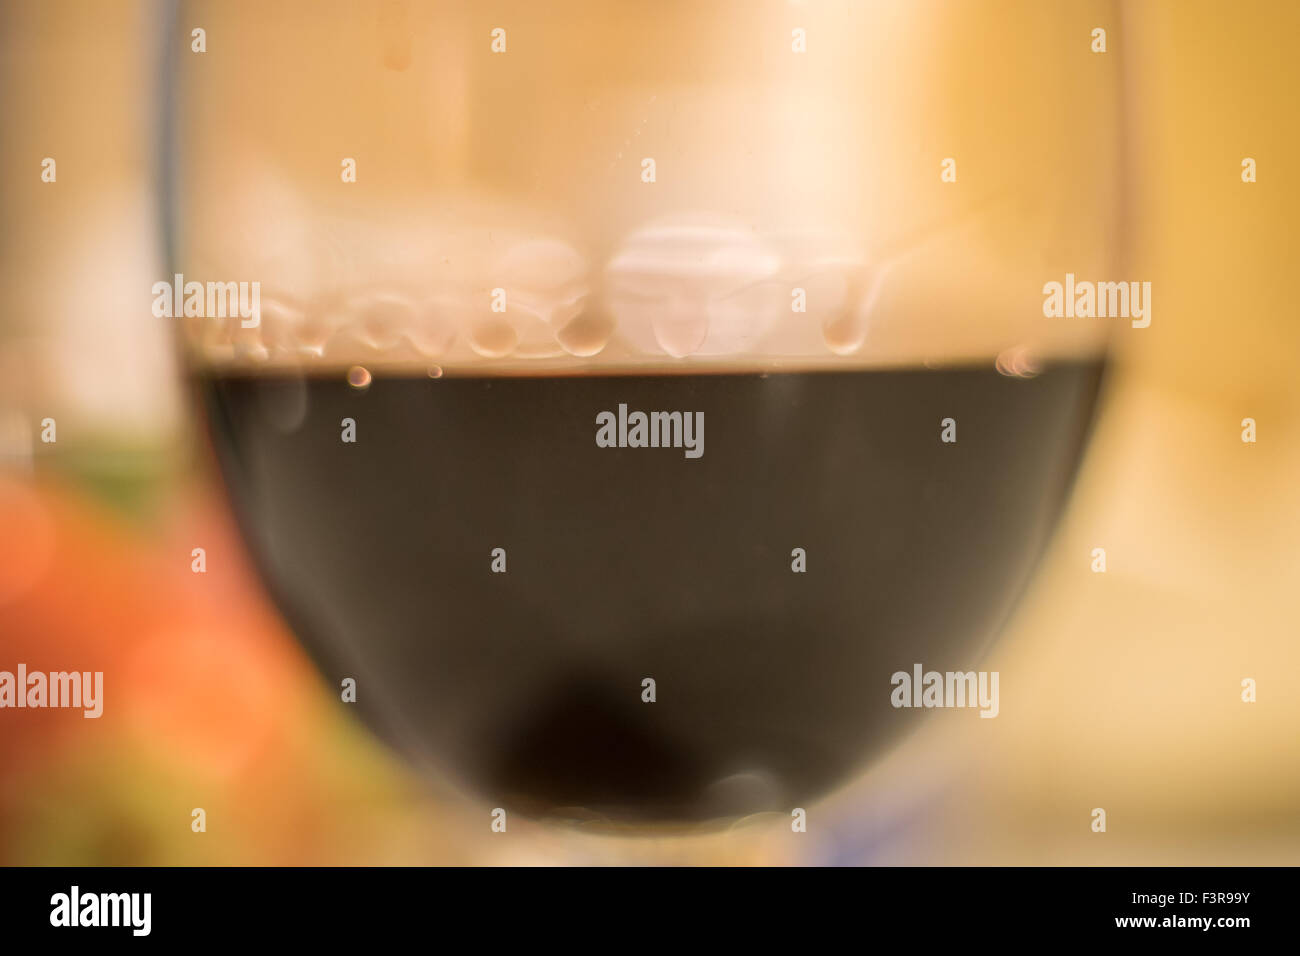 Coupe de vin avec les gouttelettes d'eau formé par la tension de surface de l'alcool Banque D'Images